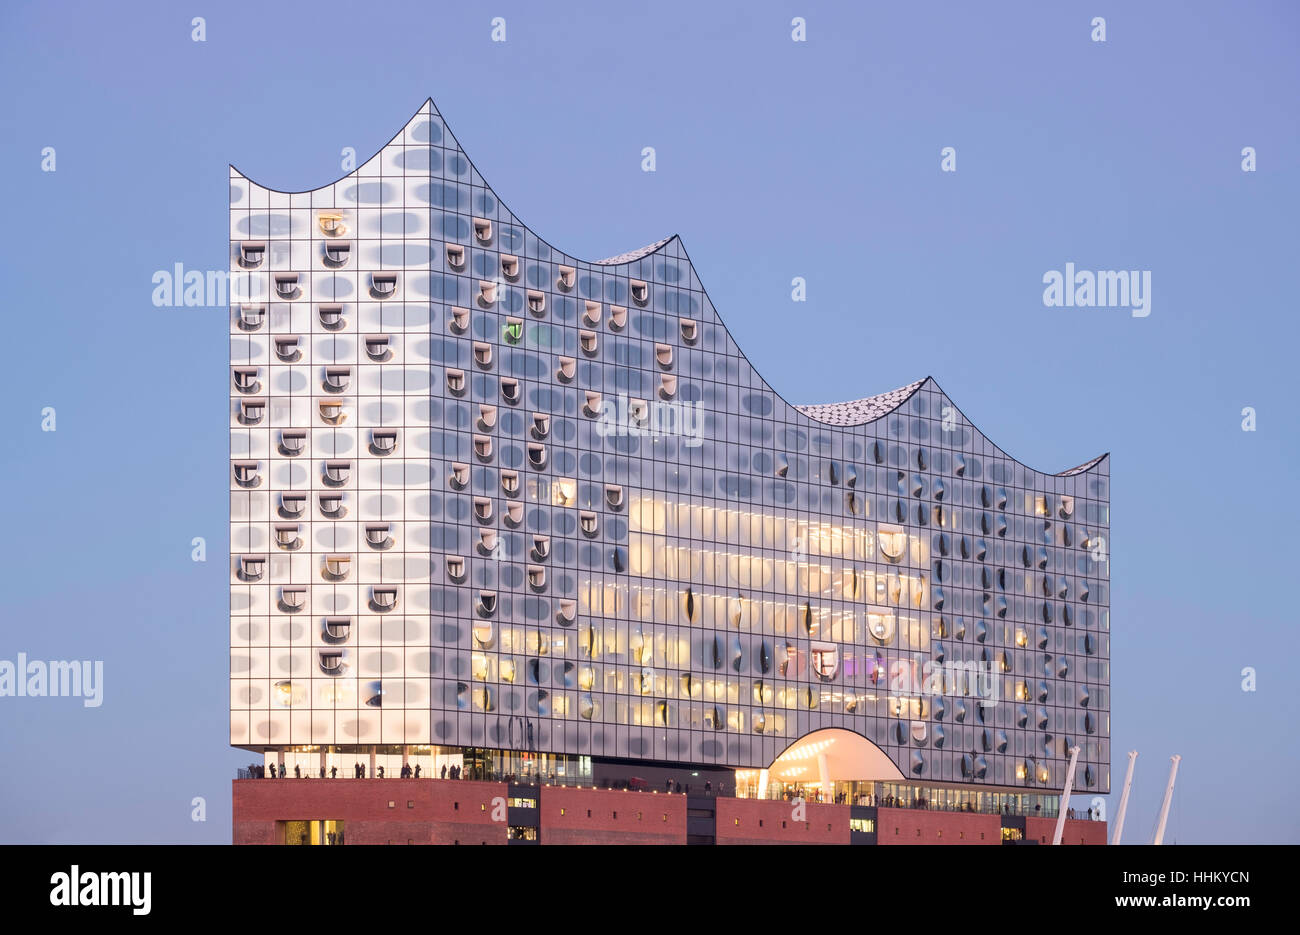 Elbphilharmonie, Hamburg, Deutschland; Ansicht des neuen Opernhauses der Elbphilharmonie in Hamburg, Deutschland. Stockfoto